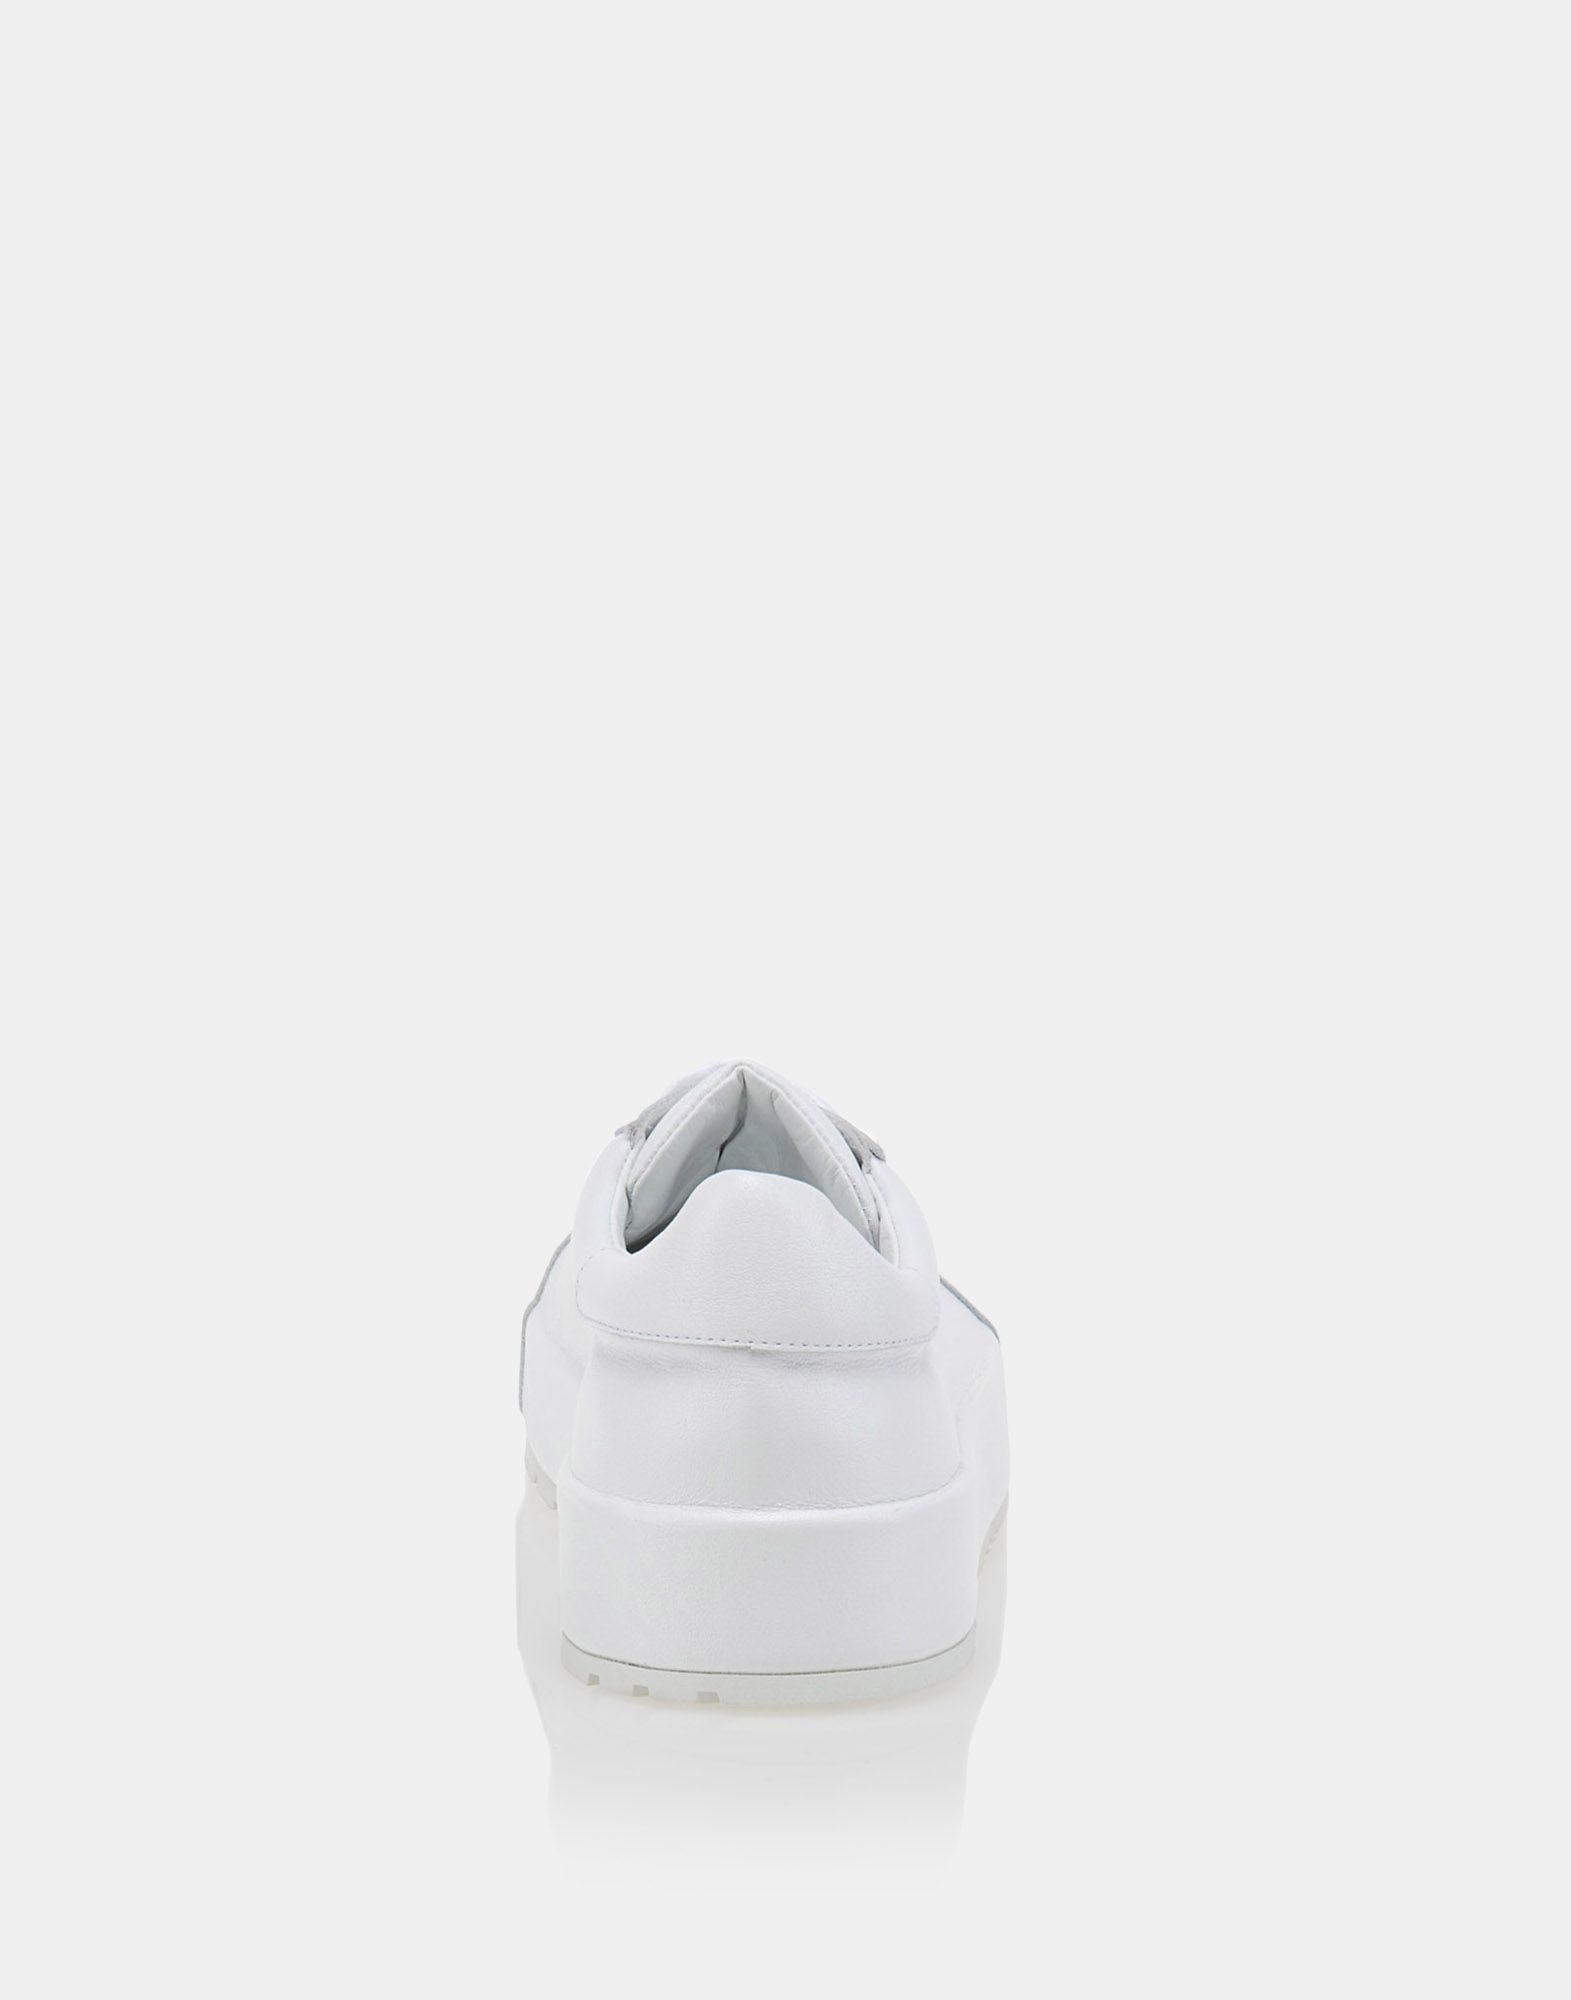 Sneakers Women - Shoes Women on Jil Sander Online Store